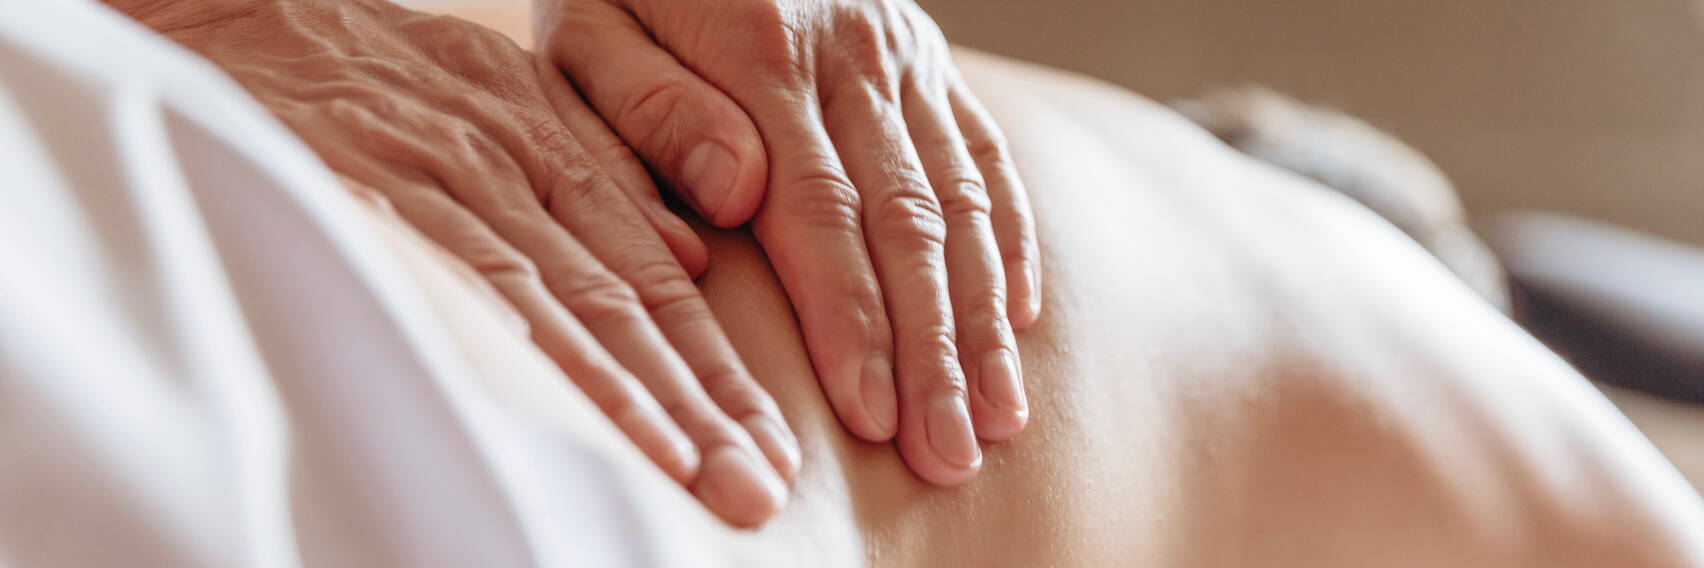 Behandlung medizinische Massage